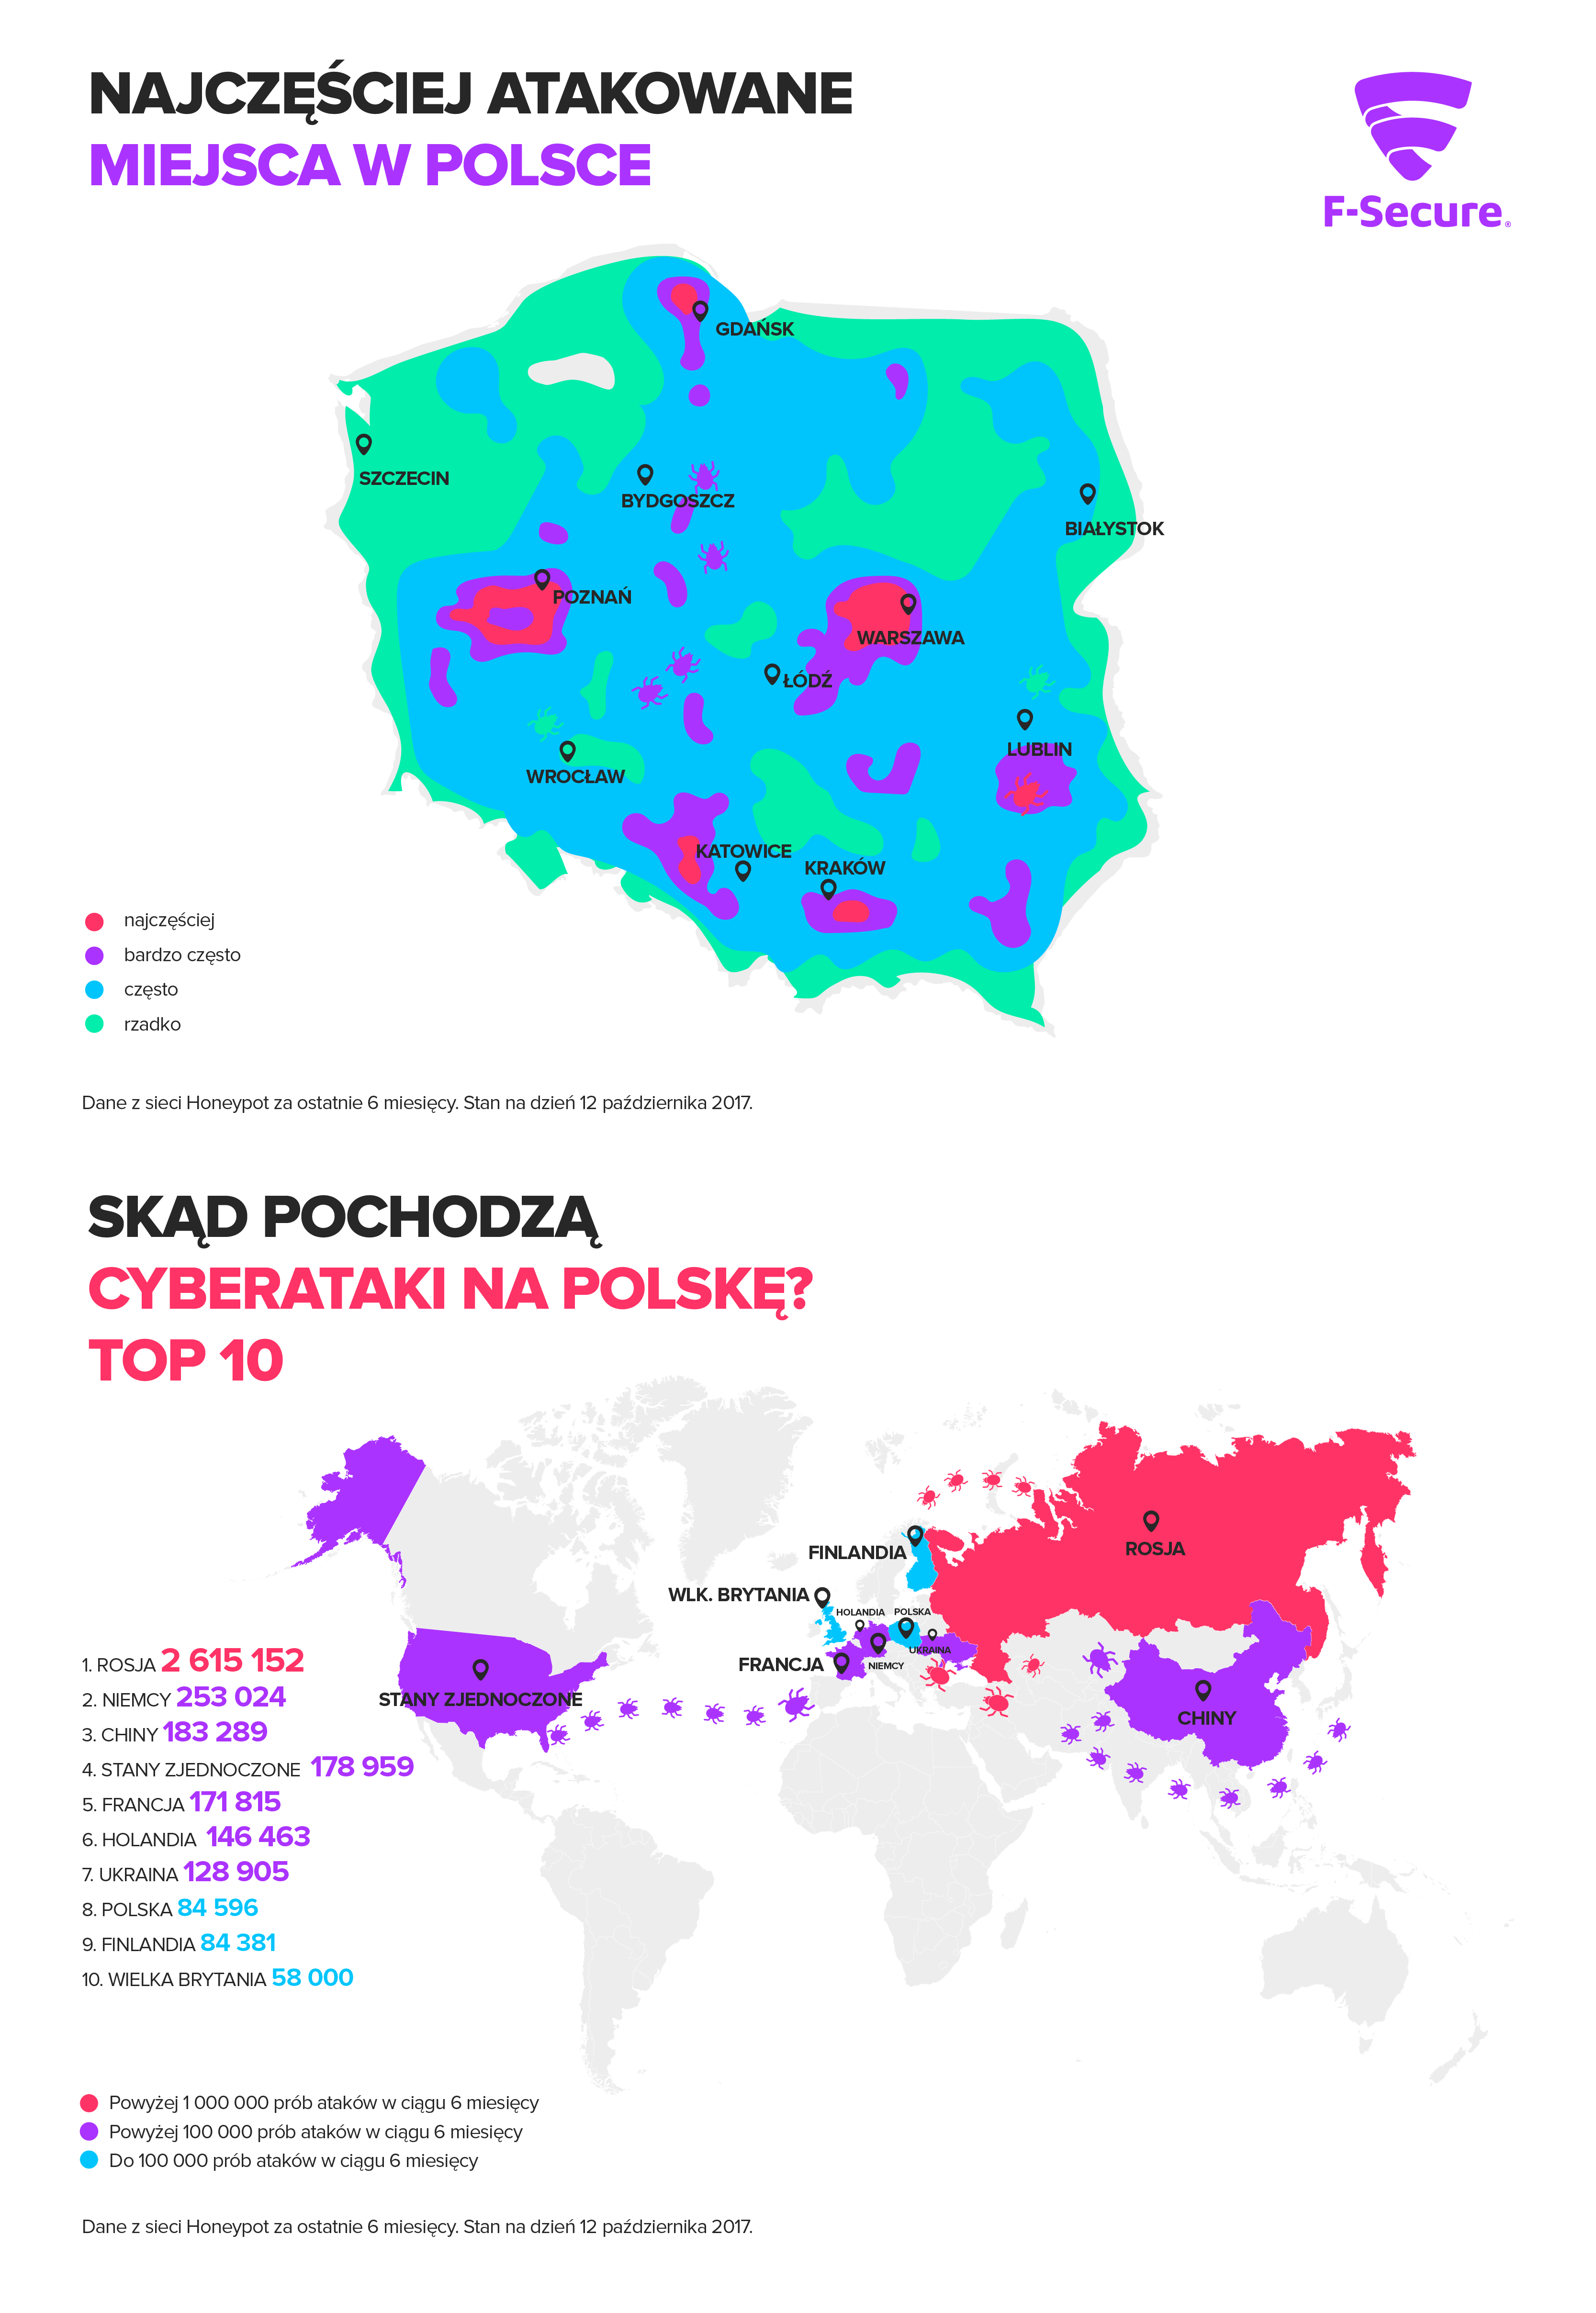 Jakie kraje najczęściej przeprowadzały cyberataki na Polskę?